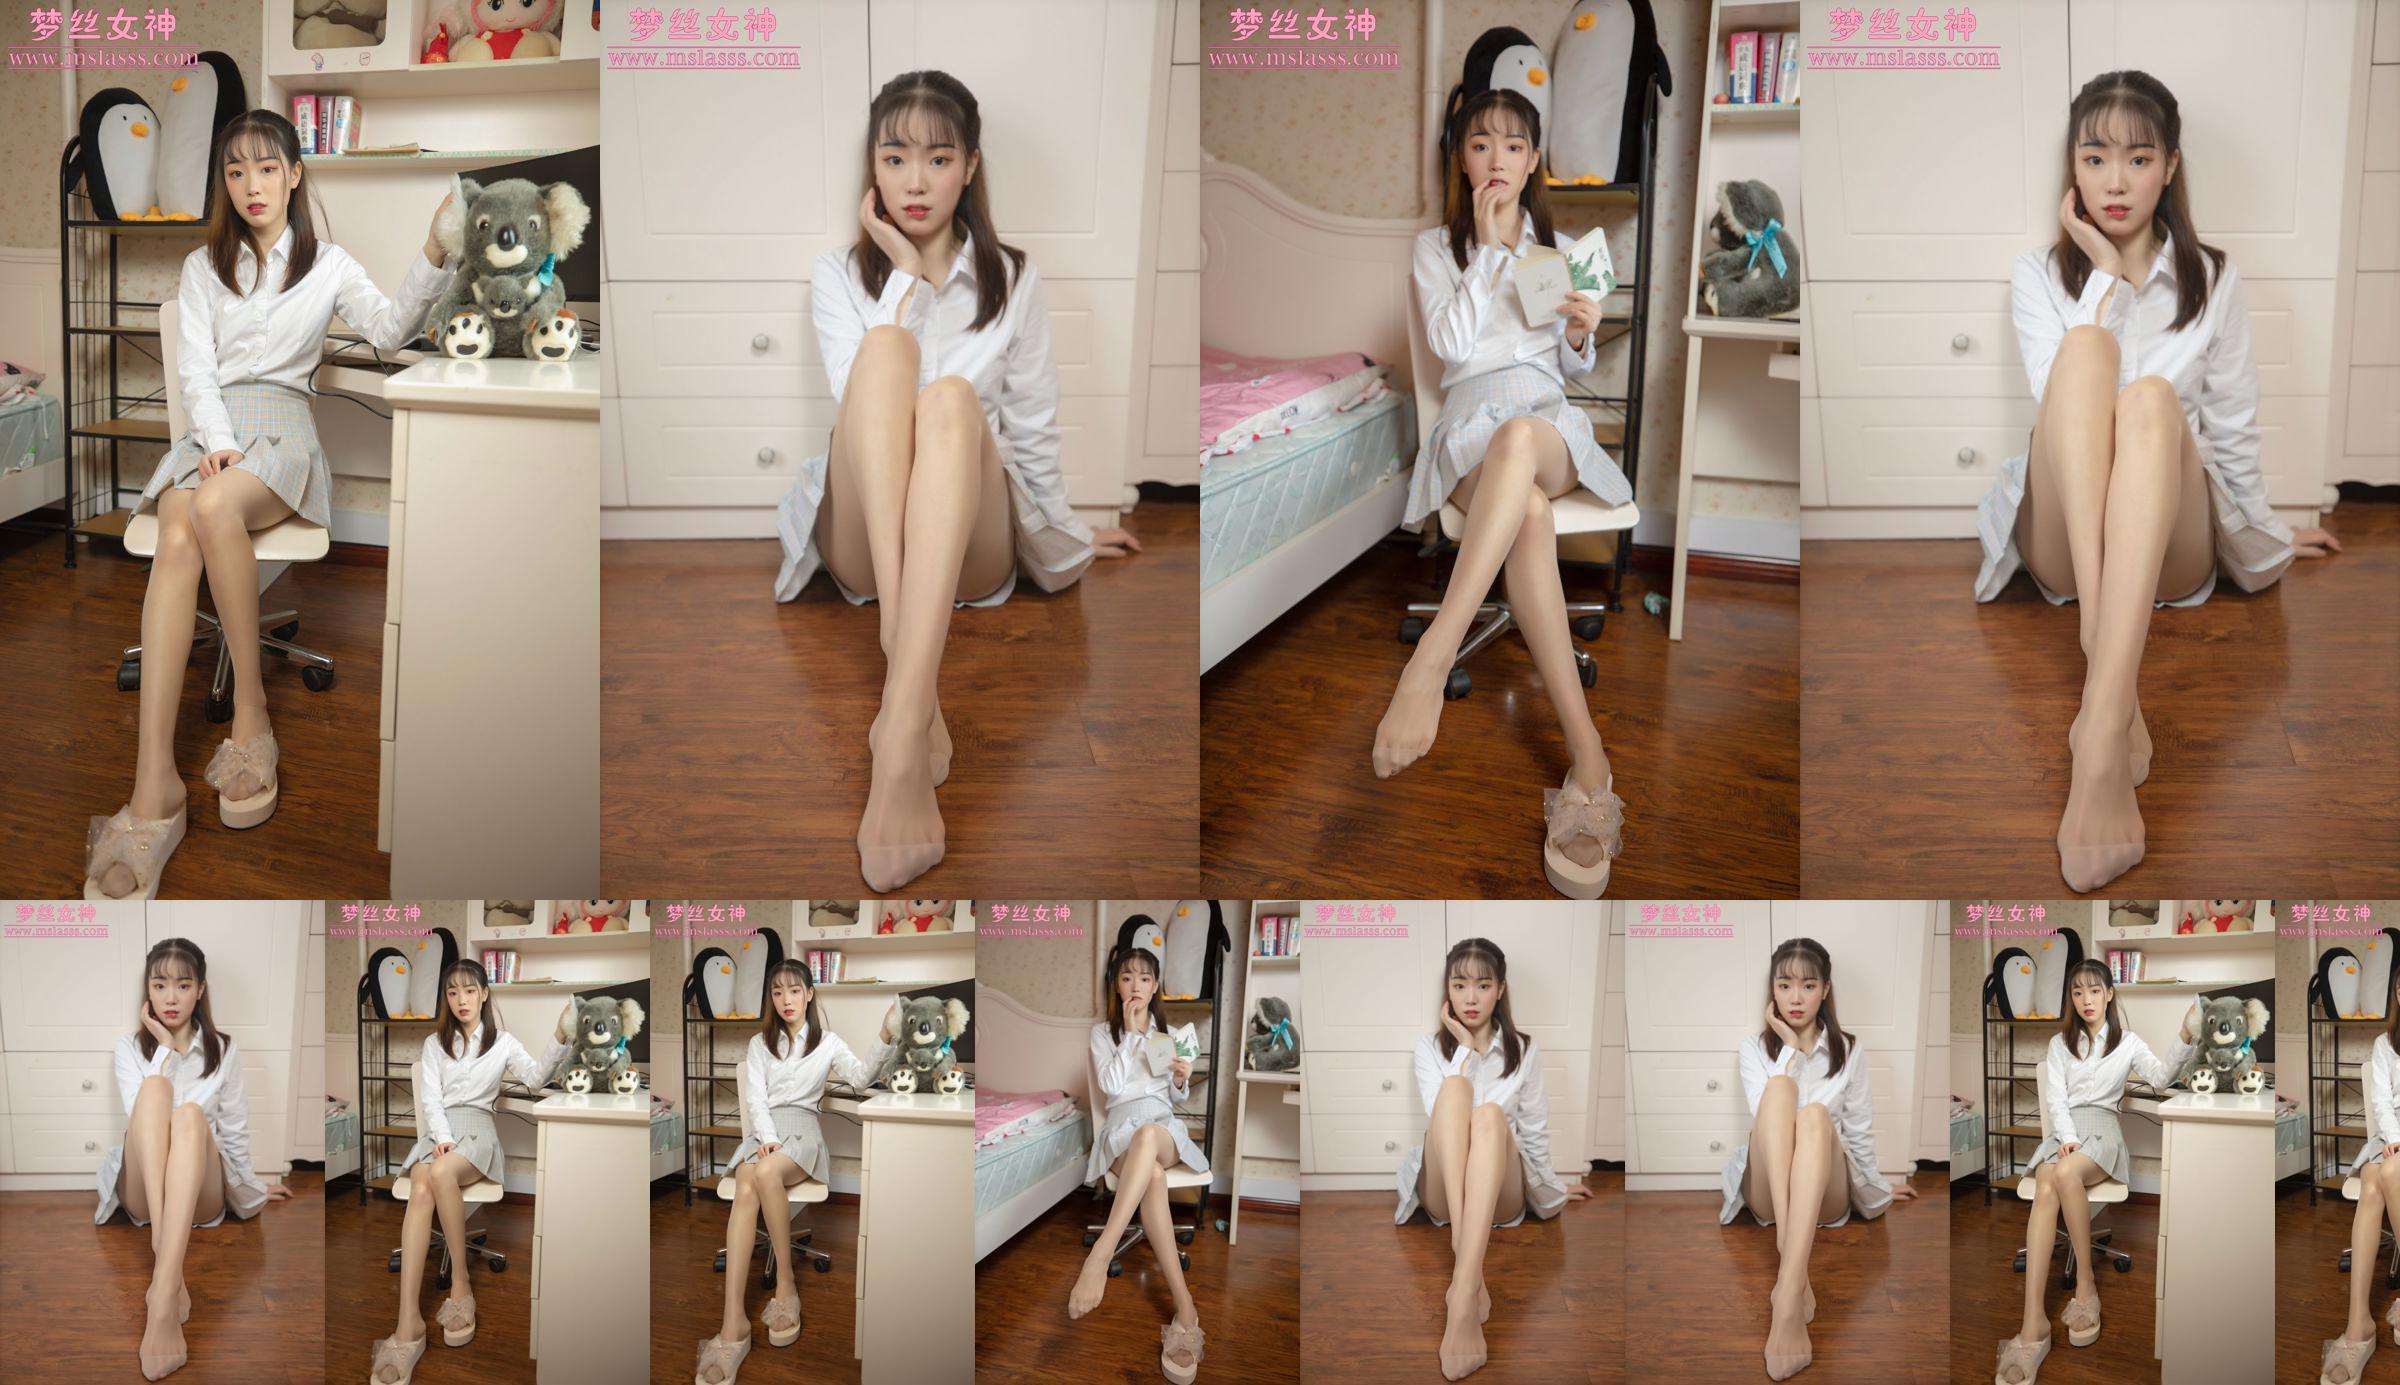 [MSLASS] Zhang Qiying dewi model baru No.312718 Halaman 3